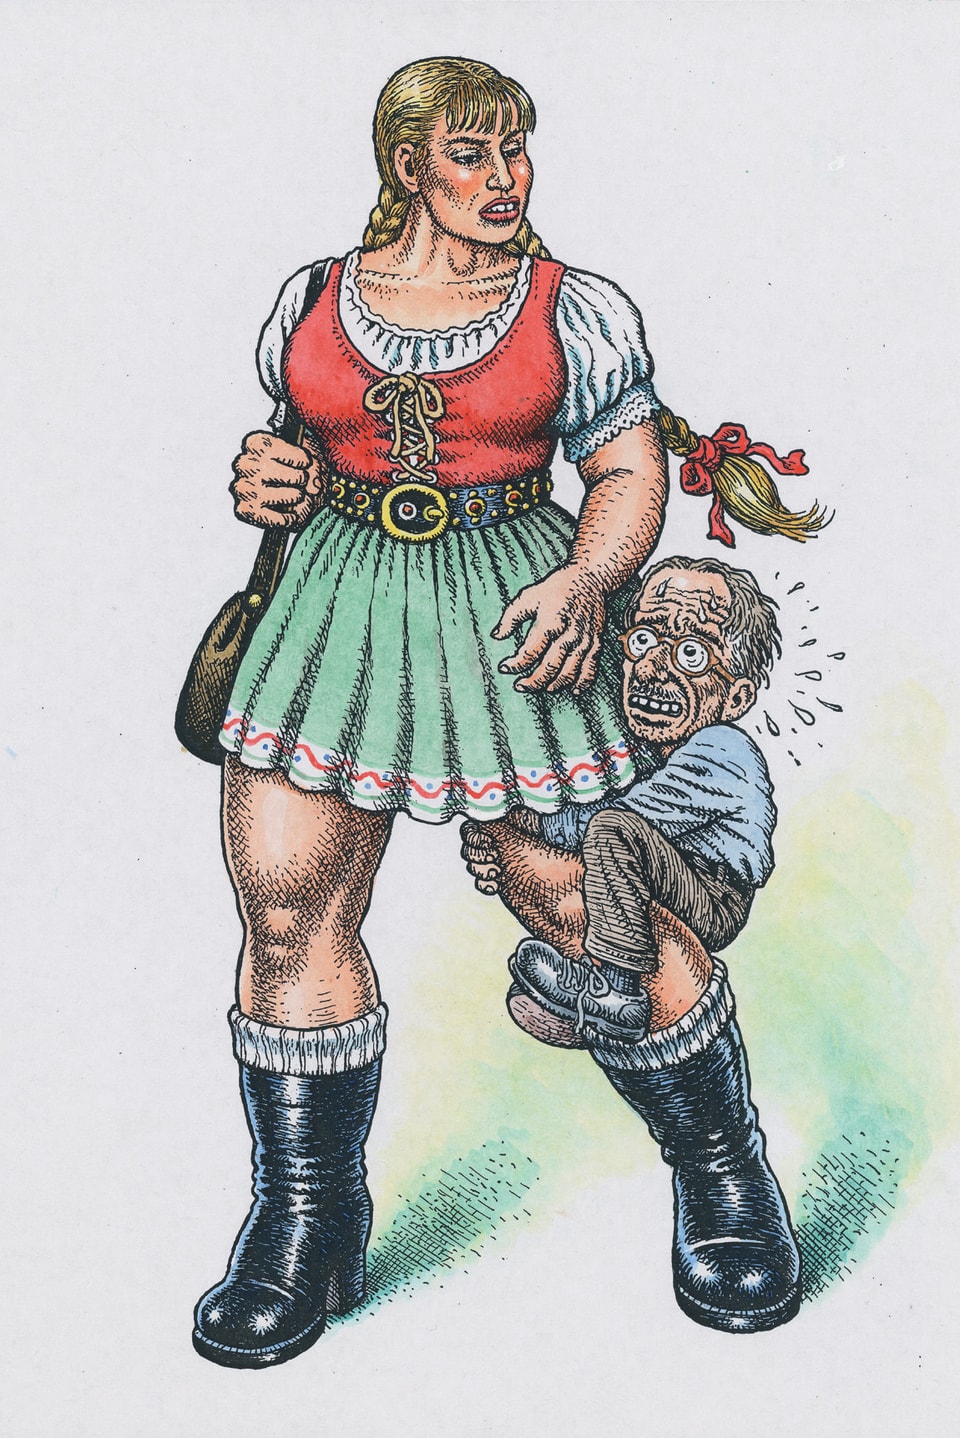 Riesige Frau mit kleinem Mann am Bein